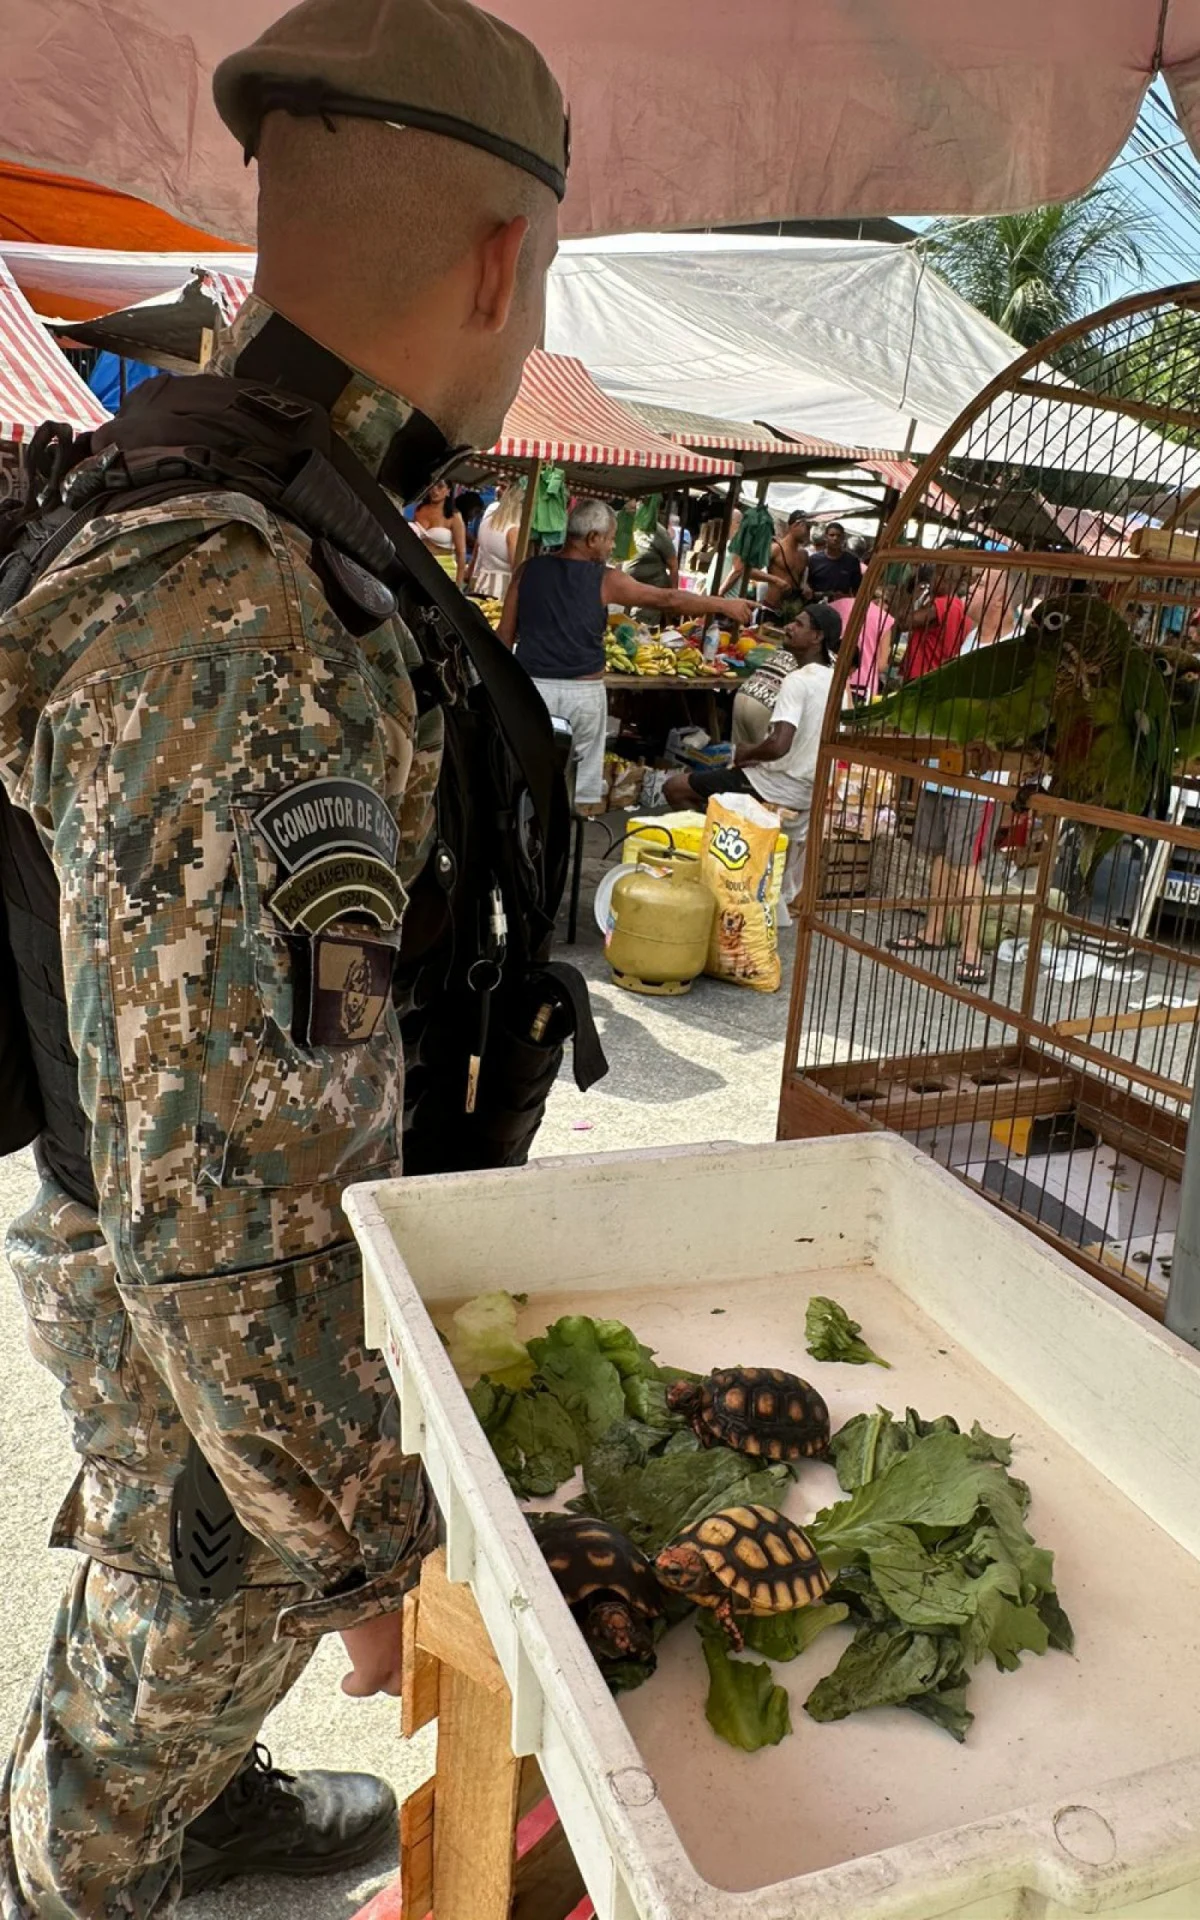 Fiscalização em feiras livres apreende mais de 20 aves no Rio